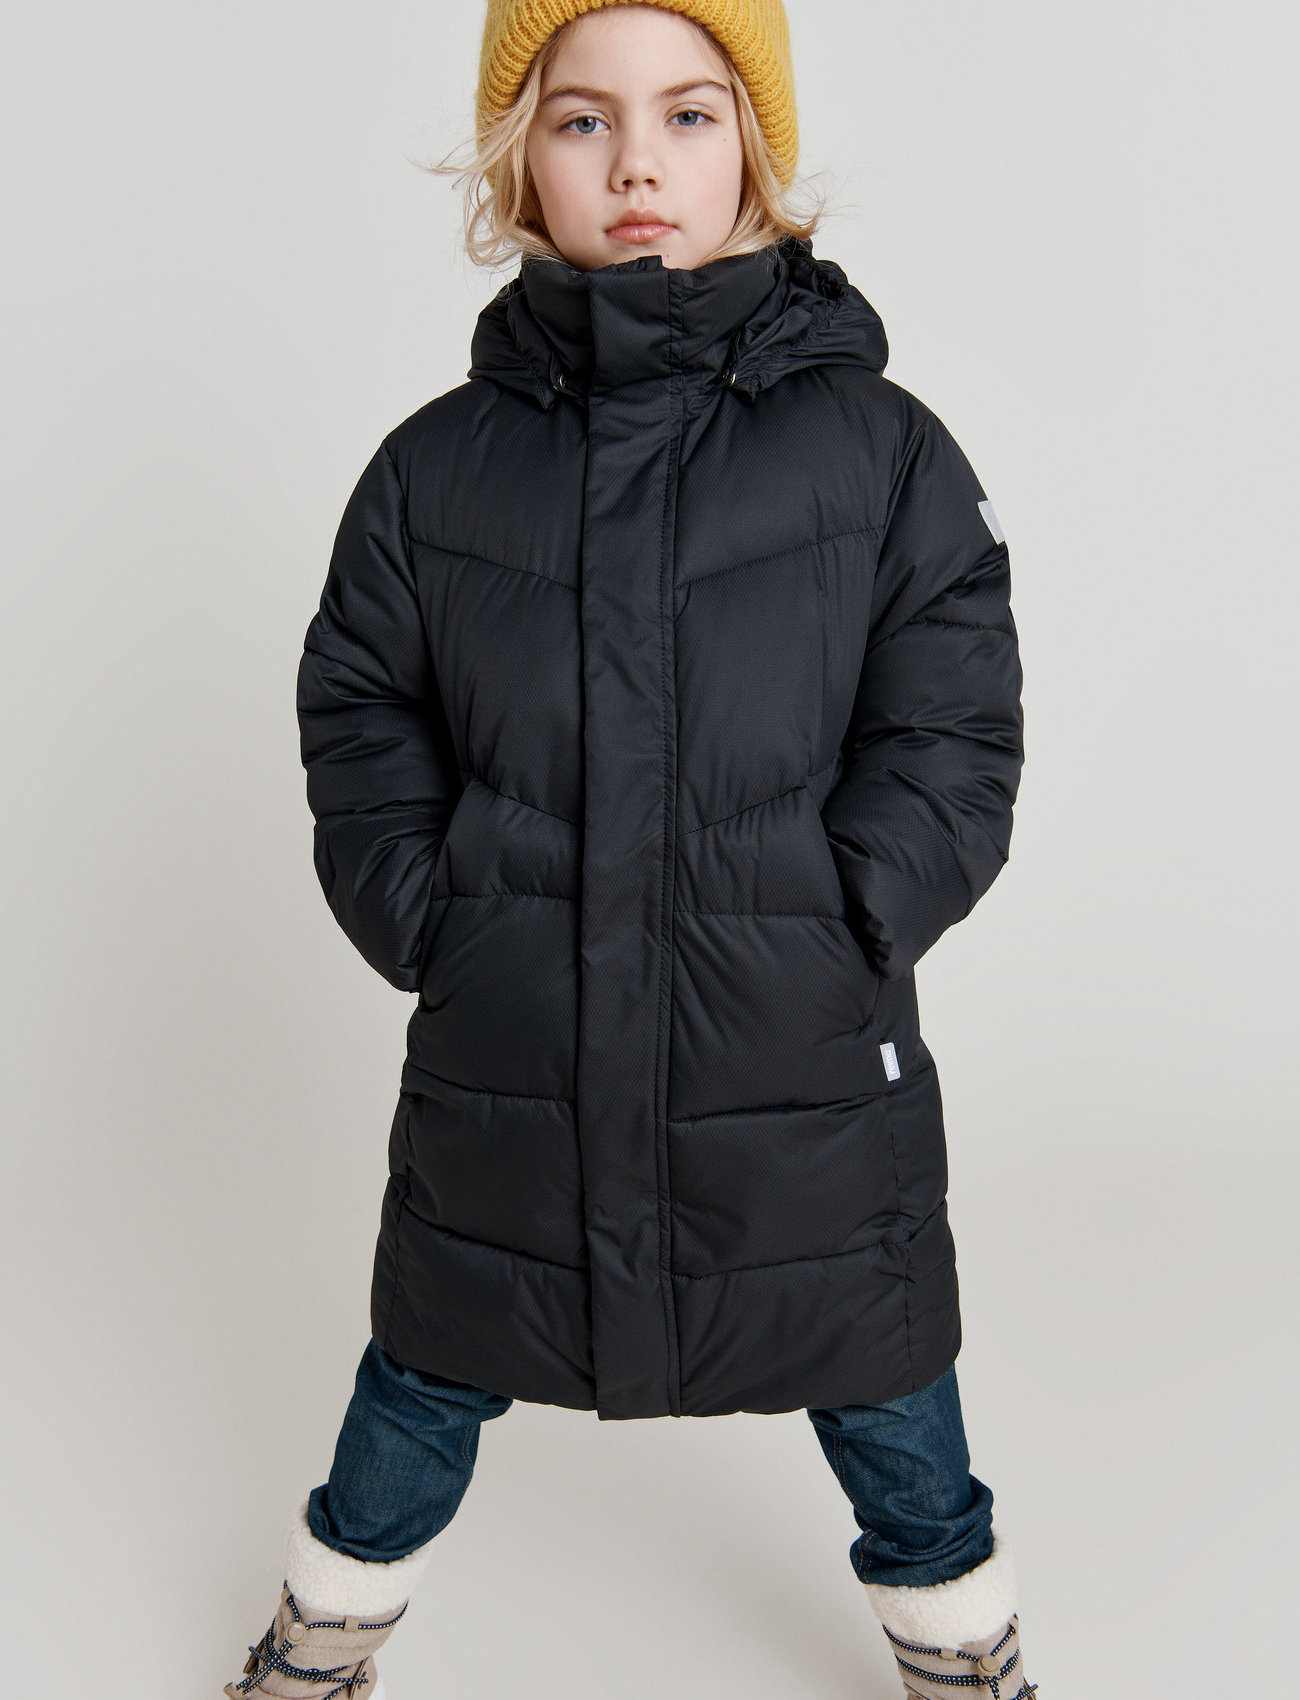 Luxe As Klacht Reima Kids' Winter Jacket Vaanila - 77.97 €. Koop Winterjassen van Reima  online op Boozt.com. Snelle levering & eenvoudig retour